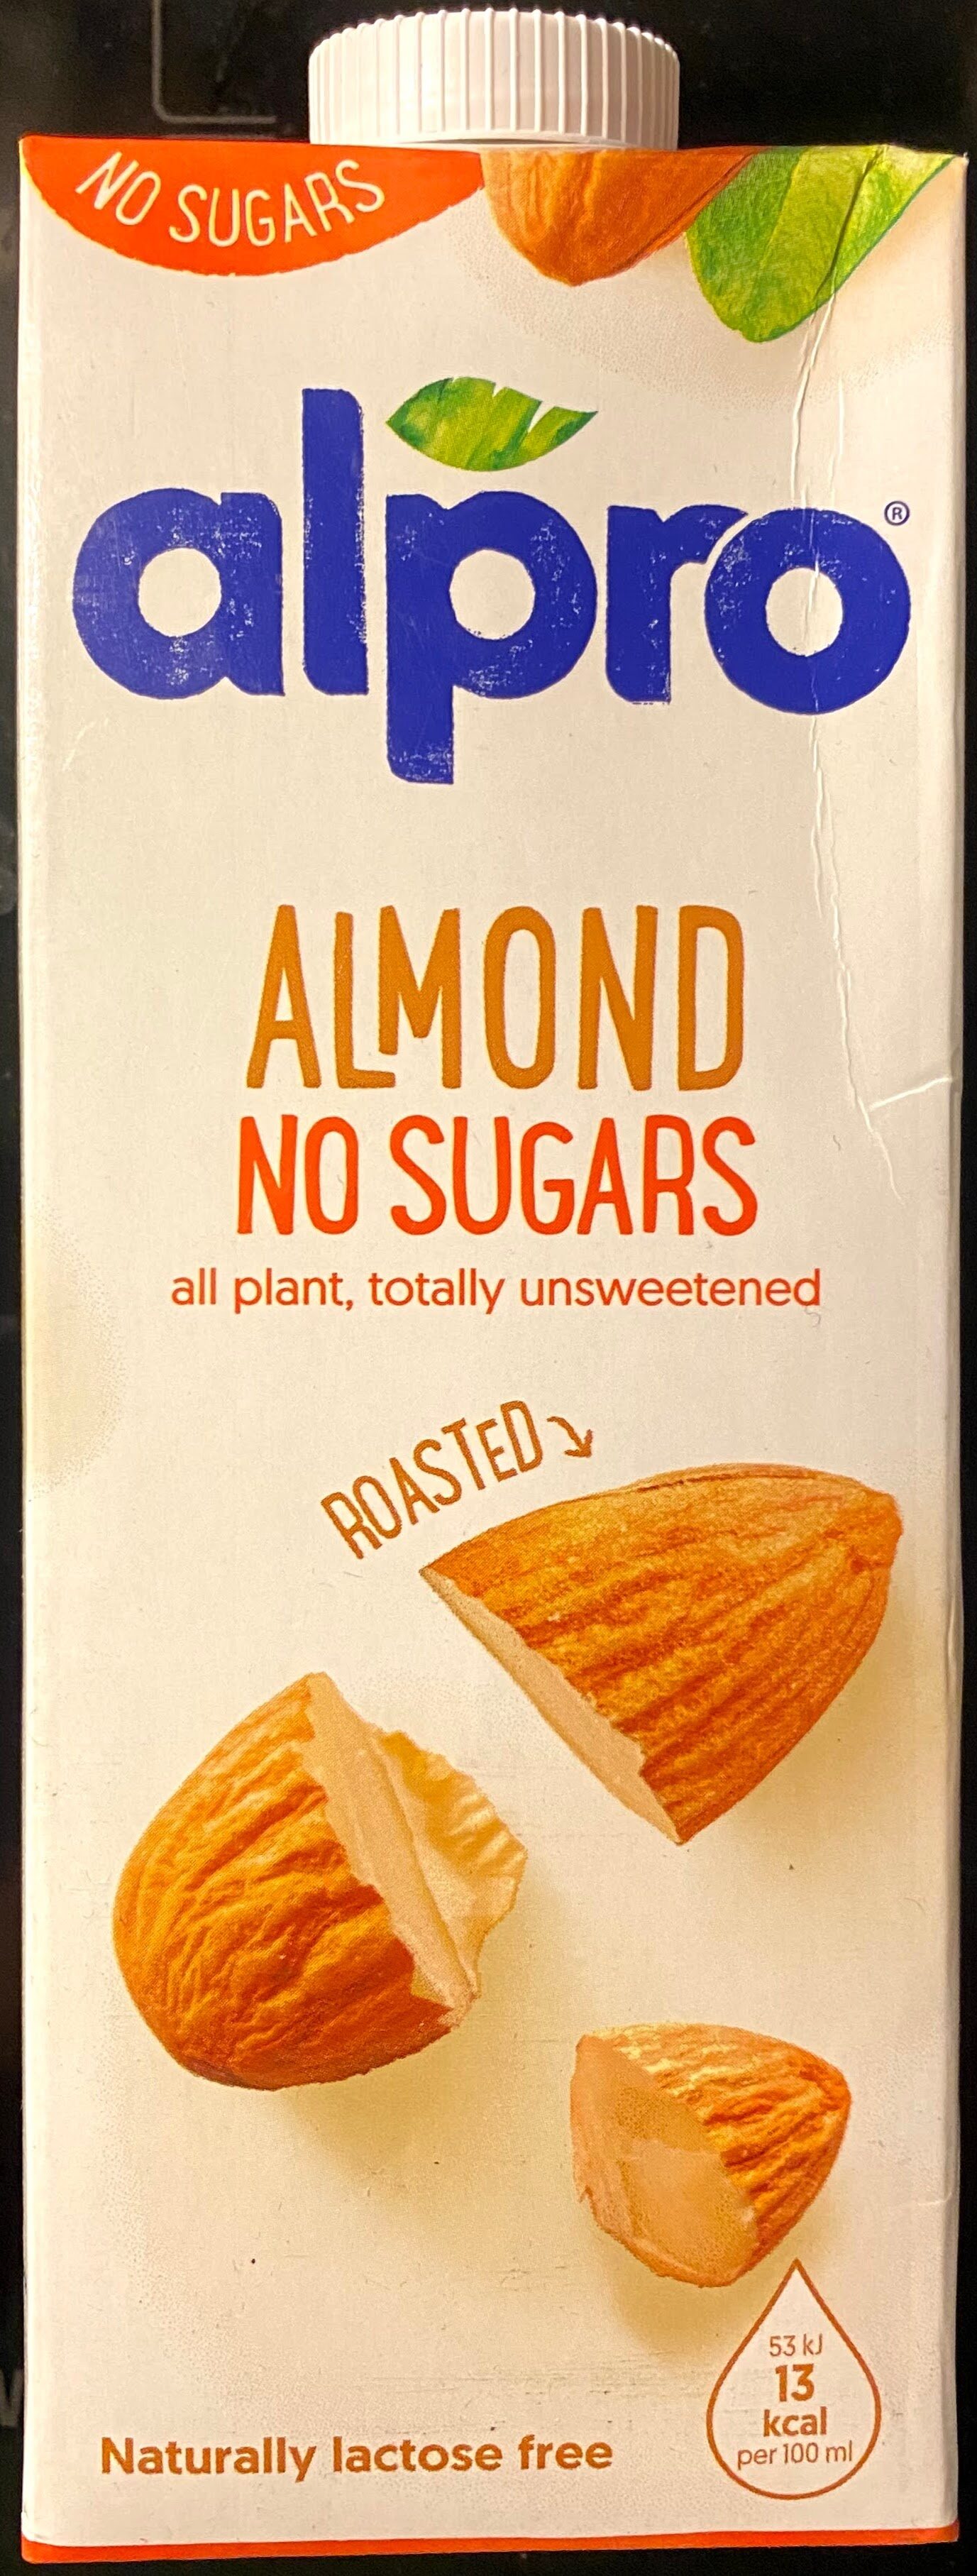 Almond no sugars - Product - en